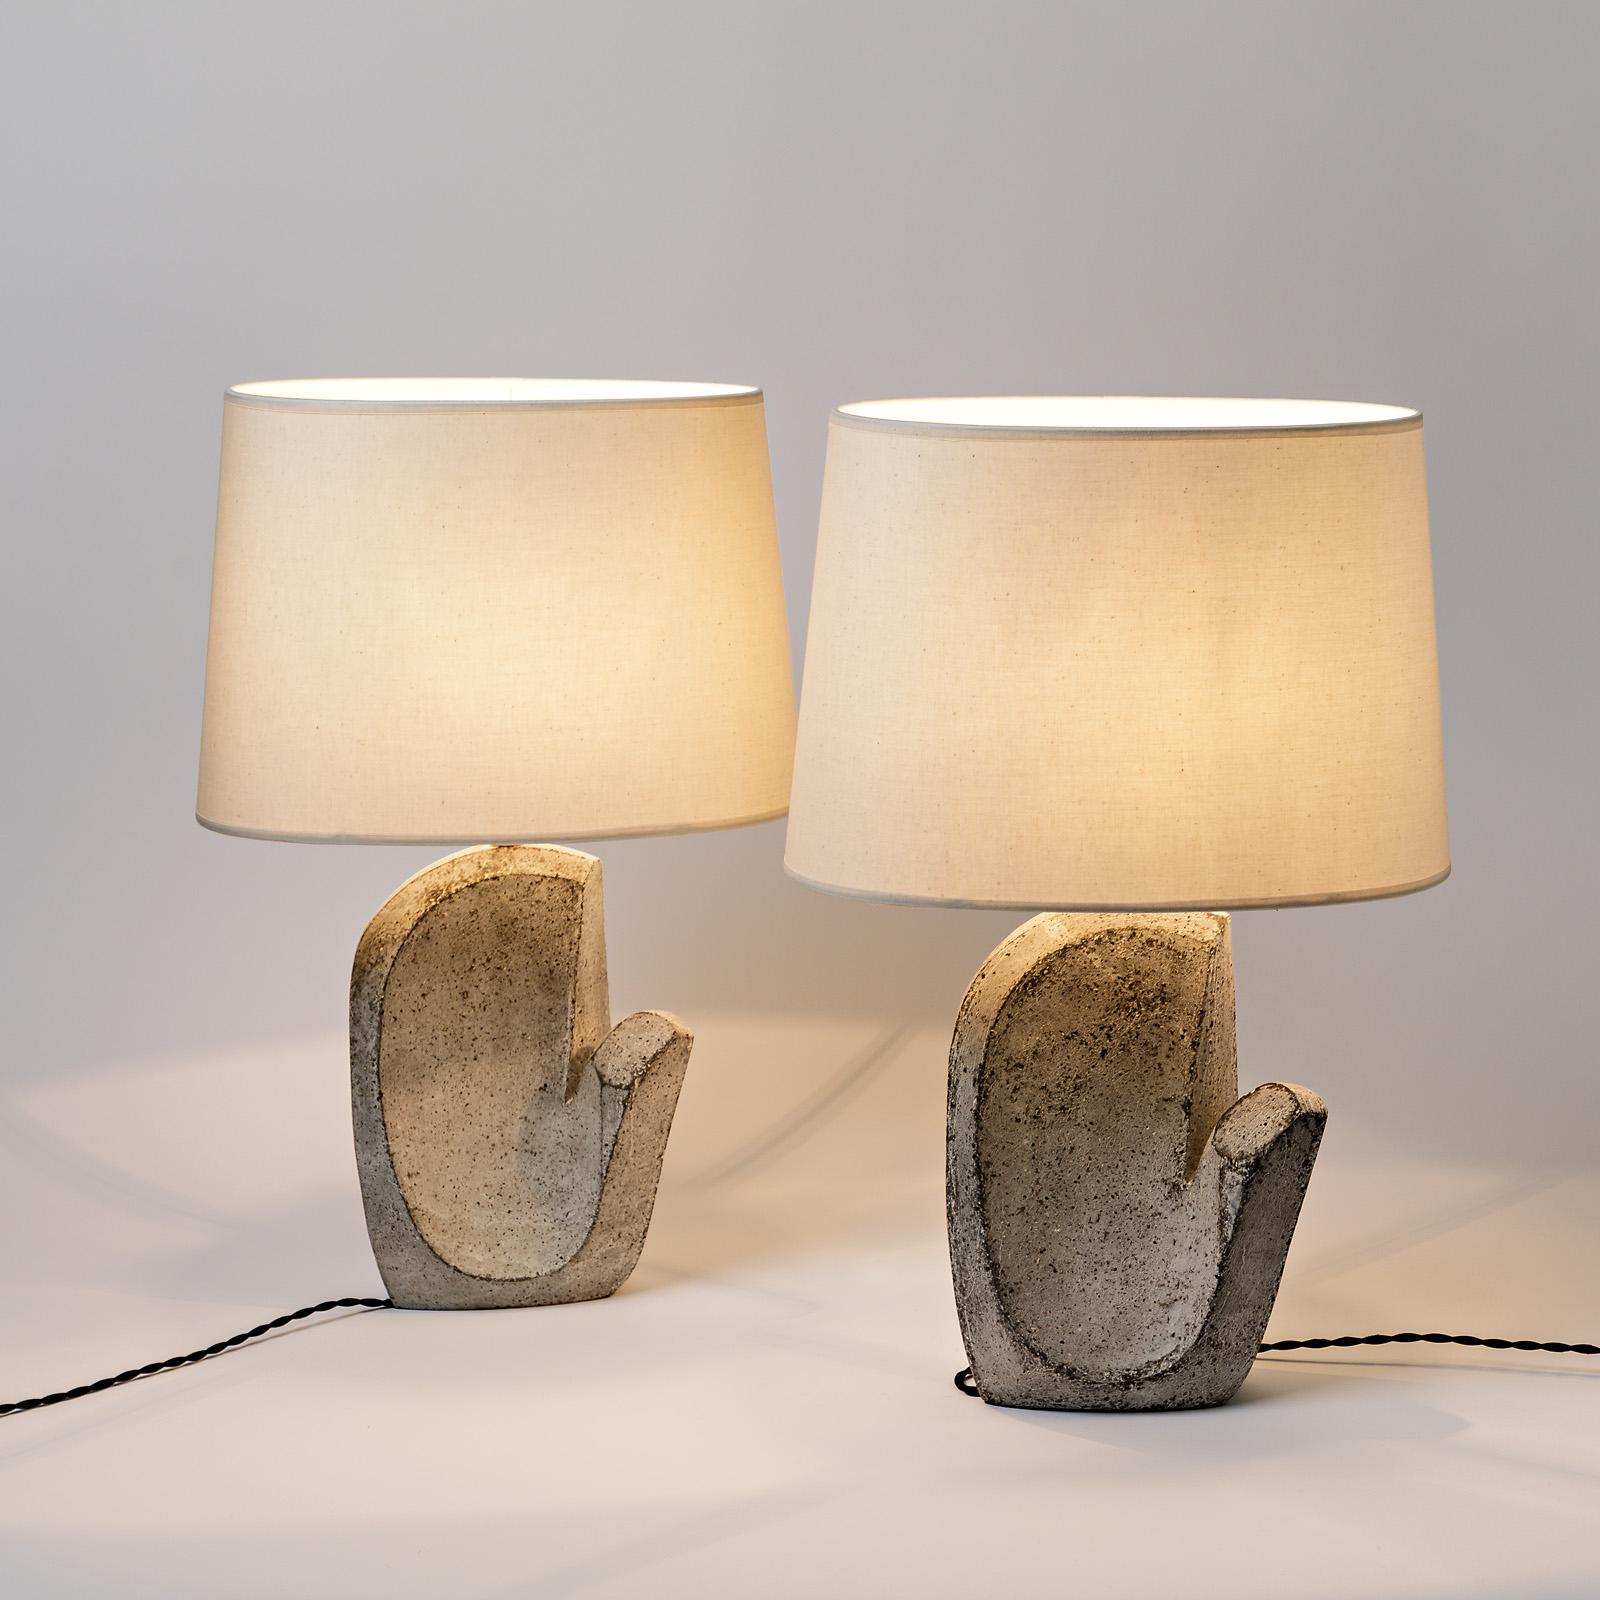 Ein Paar Tischlampen aus Keramik von Maarten Stuer.
Unter dem Sockel signiert.
Verkauft mit dem Lampenschirm und einem neuen europäischen elektrischen System.
2021.
Abmessungen: 
Abmessungen mit Keramik, Elektrik, Lampenschirm : 53 x 30 x 20